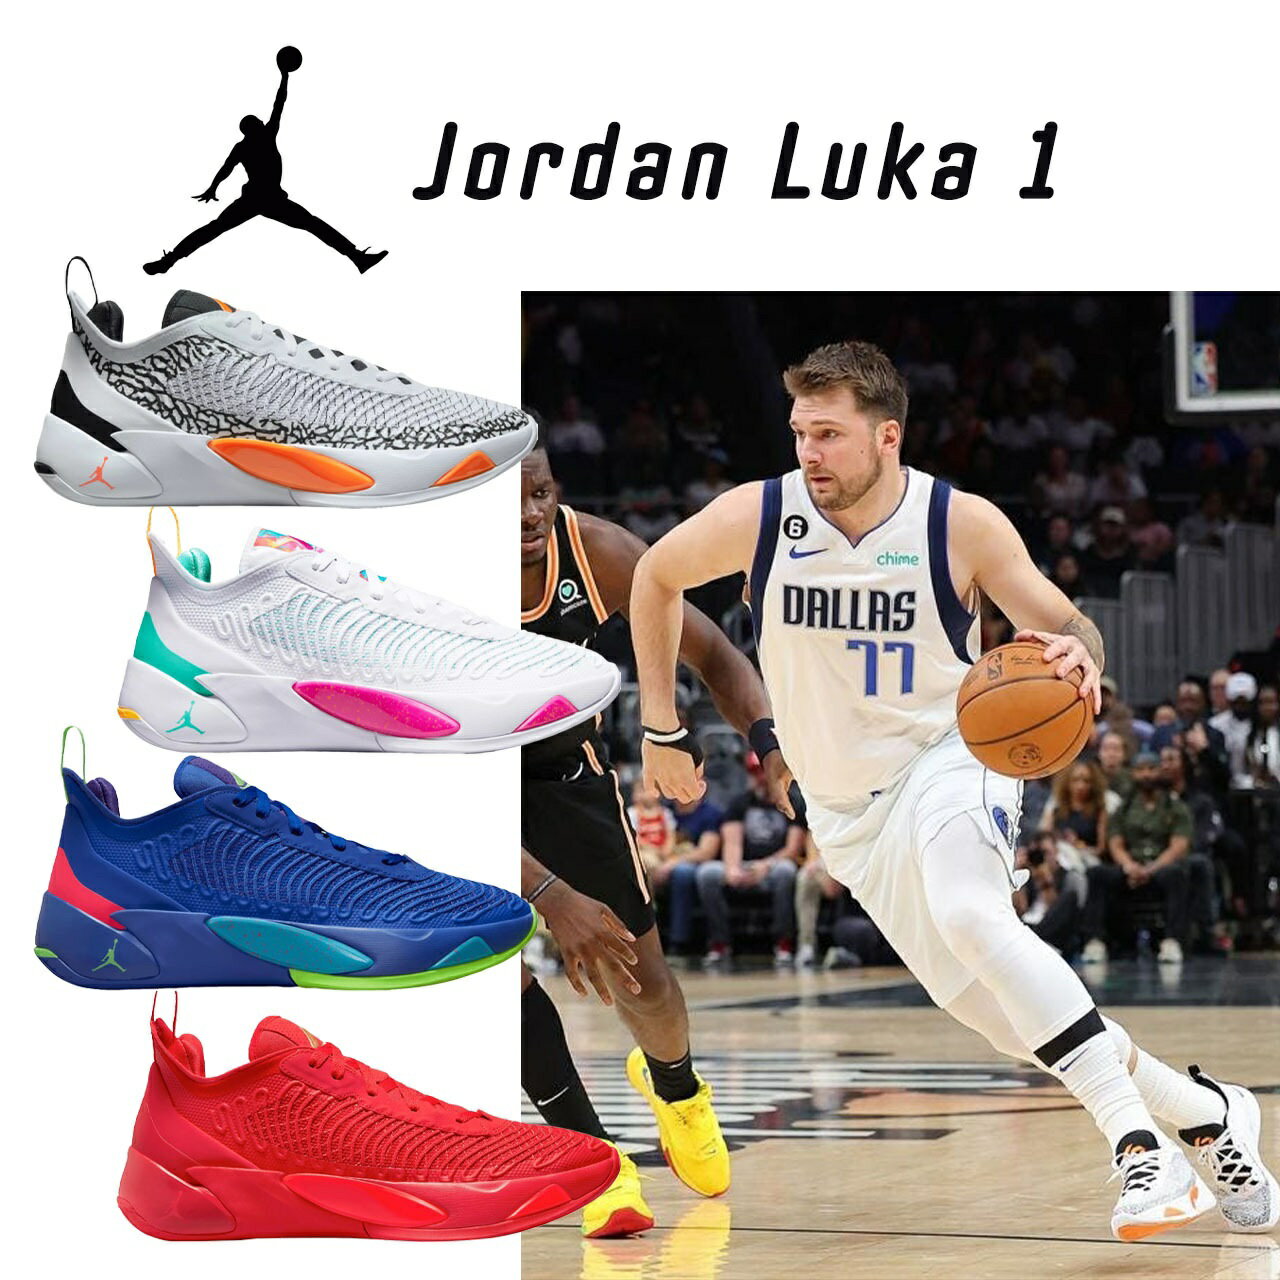 【レビューを書いてプレゼント企画】 商品購入後に商品レビューを書いて頂いたお客様に先着順でプレゼントを発送します。(購入と同時にご記入頂いた場合は同梱する事もあります。) 現在こちらの商品では"NBAリバーシブルキーストラップ"をプレゼント中。 【商品名】 Jordan Luka 1 Basketball Shoes ナイキ ジョーダン ルカ1 メンズ ローカット 【カラー】 White/Orange　DN1772-108 White/Pink　DN1772-164 Royal/Green　DN1772-436 Red/Gold　DN1772-676 【サイズ】 25.5cm　M7.5/W9.0 26.0cm　M8.0/W9.5 26.5cm　M8.5/W10.0 27.0cm　M9.0/W10.5 27.5cm　M9.5/W11.0 28.0cm　M10.0/W11.5 28.5cm　M10.5/W12.0 29.0cm　M11.0/W12.5 29.5cm　M11.5/W13.0 30.0cm　M12.0/W13.5 31.0cm　M13.0/W14.5 【お届け予定】 ■お客様のお手元におよそ3週間〜1ヶ月をお届けの目安としております。 ■USA販売元よりアメリカ内での弊社倉庫へ一度集めてから日本へ輸出します。 ■日本内弊社事務所にて検品してからお客様へ発送します。 ■USA販売元より在庫確認はしておりますが、購入時に完売している場合もございます。その場合は手配可能な他サイズ/カラー/類似商品をご提案させて頂きます。 ■ご予約販売の性質上、コンビニ・銀行振込等の決済は入金確認後の買い付けになりますのでお届け予定が遅くなる可能性があります。 ■高額レア商品の発送後受け取り拒否多発のため、35,000円以上のご注文は代引き支払いは受け付けておりません。 ルカ1の他モデルはこちら ルカ1ネクストネイチャー